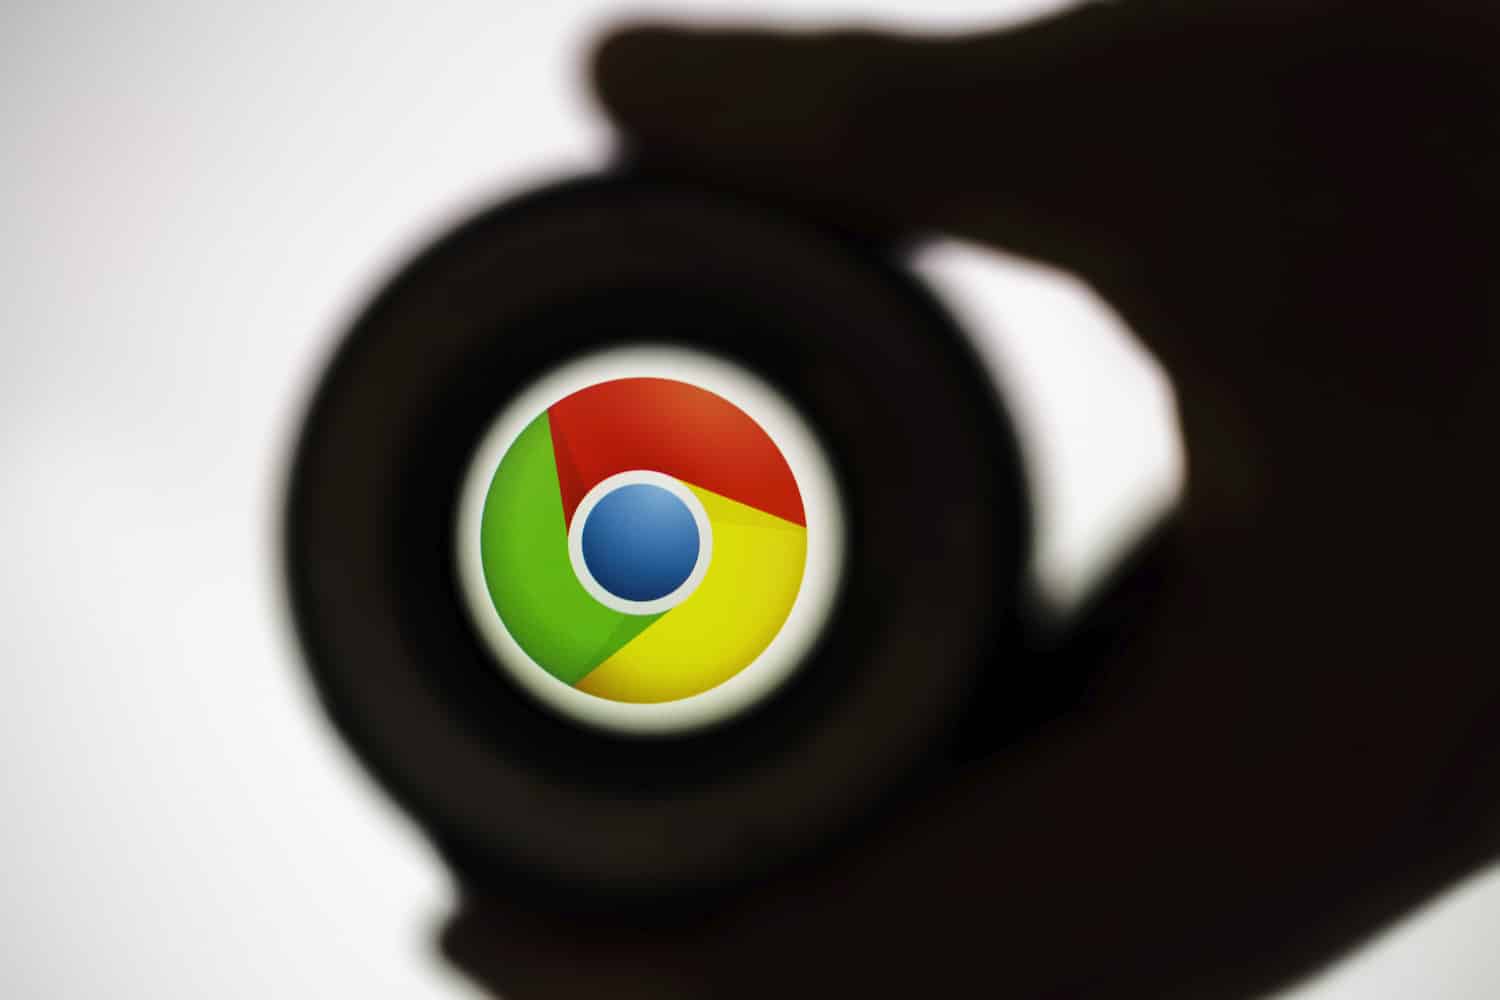 جوجل وموزيلا تمنعان مراقبة شبكة الإنترنت في كازاخستان